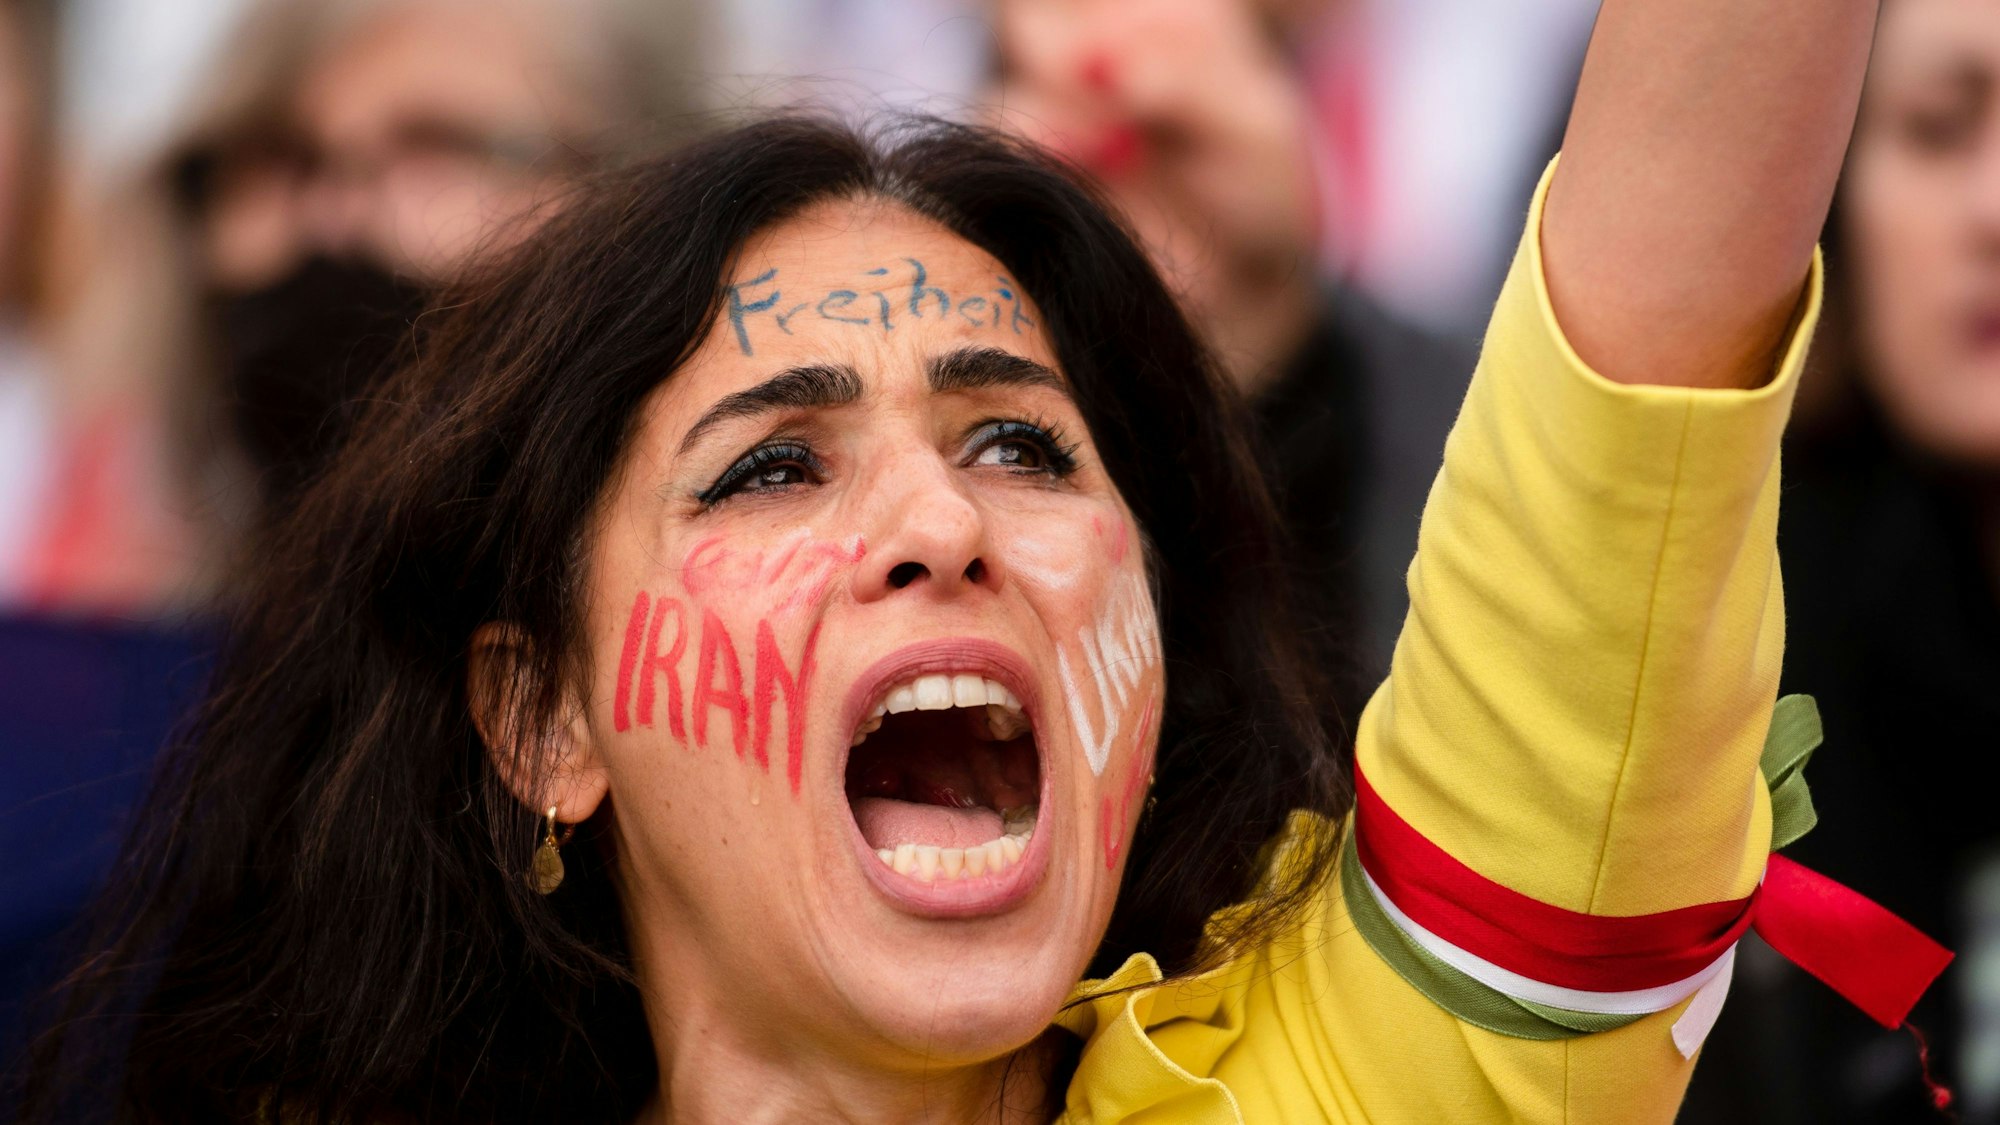 Eine Frau nahm am ·Marsch für die Freiheit·in Köln teil. Ihr Arm ist in die Luft gereckt, auf ihrer Wange steht „Iran“, auf der Stirn „Freiheit“.